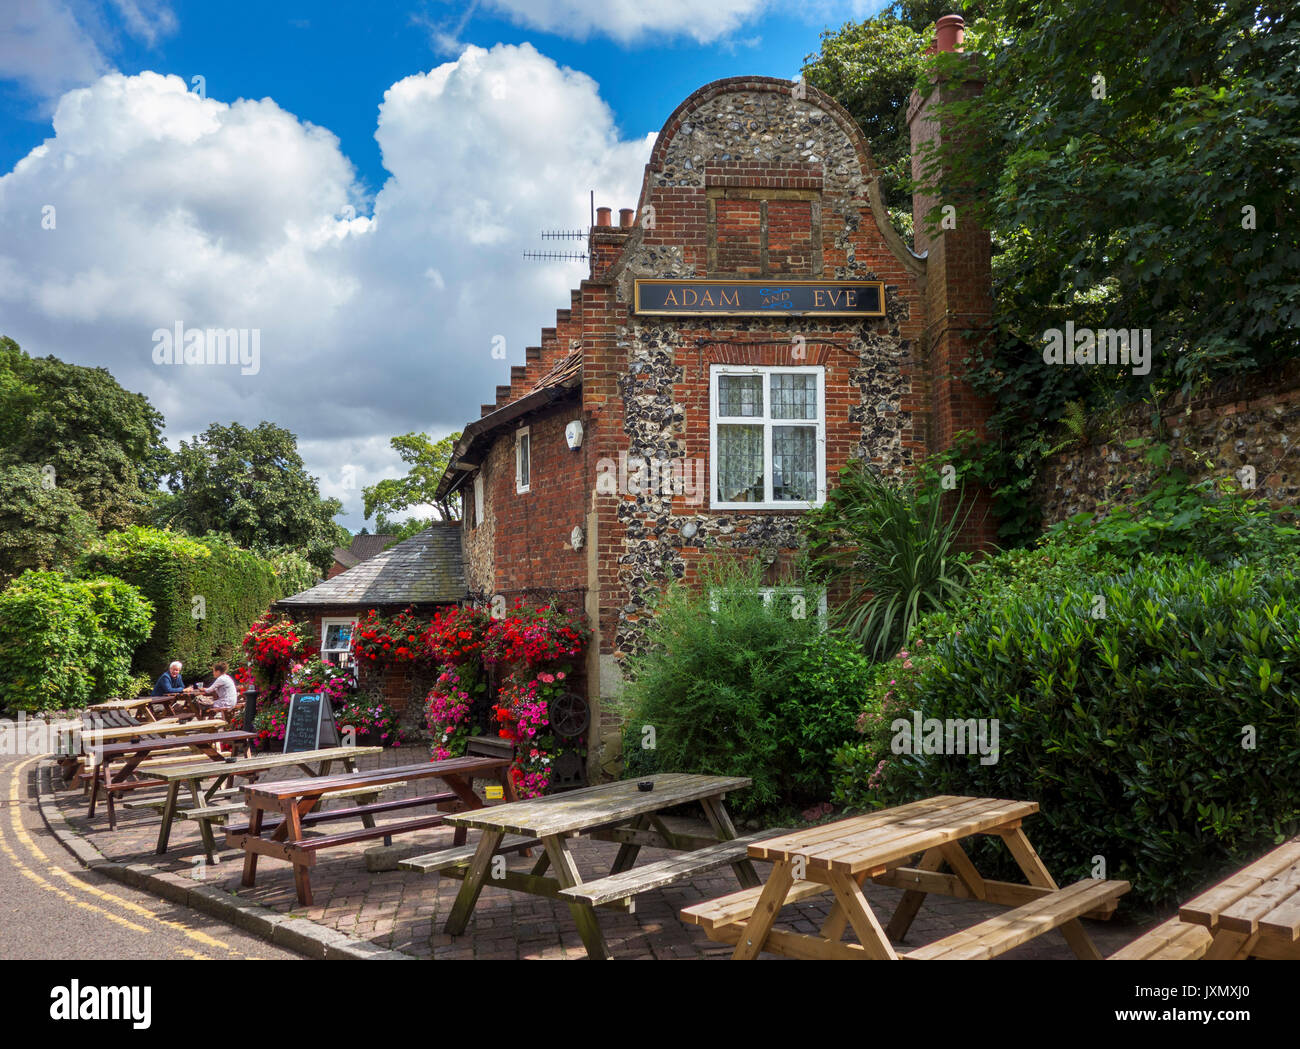 La Adam ed Eve pub, Norwich, Norfolk, Inghilterra, Regno Unito Foto Stock